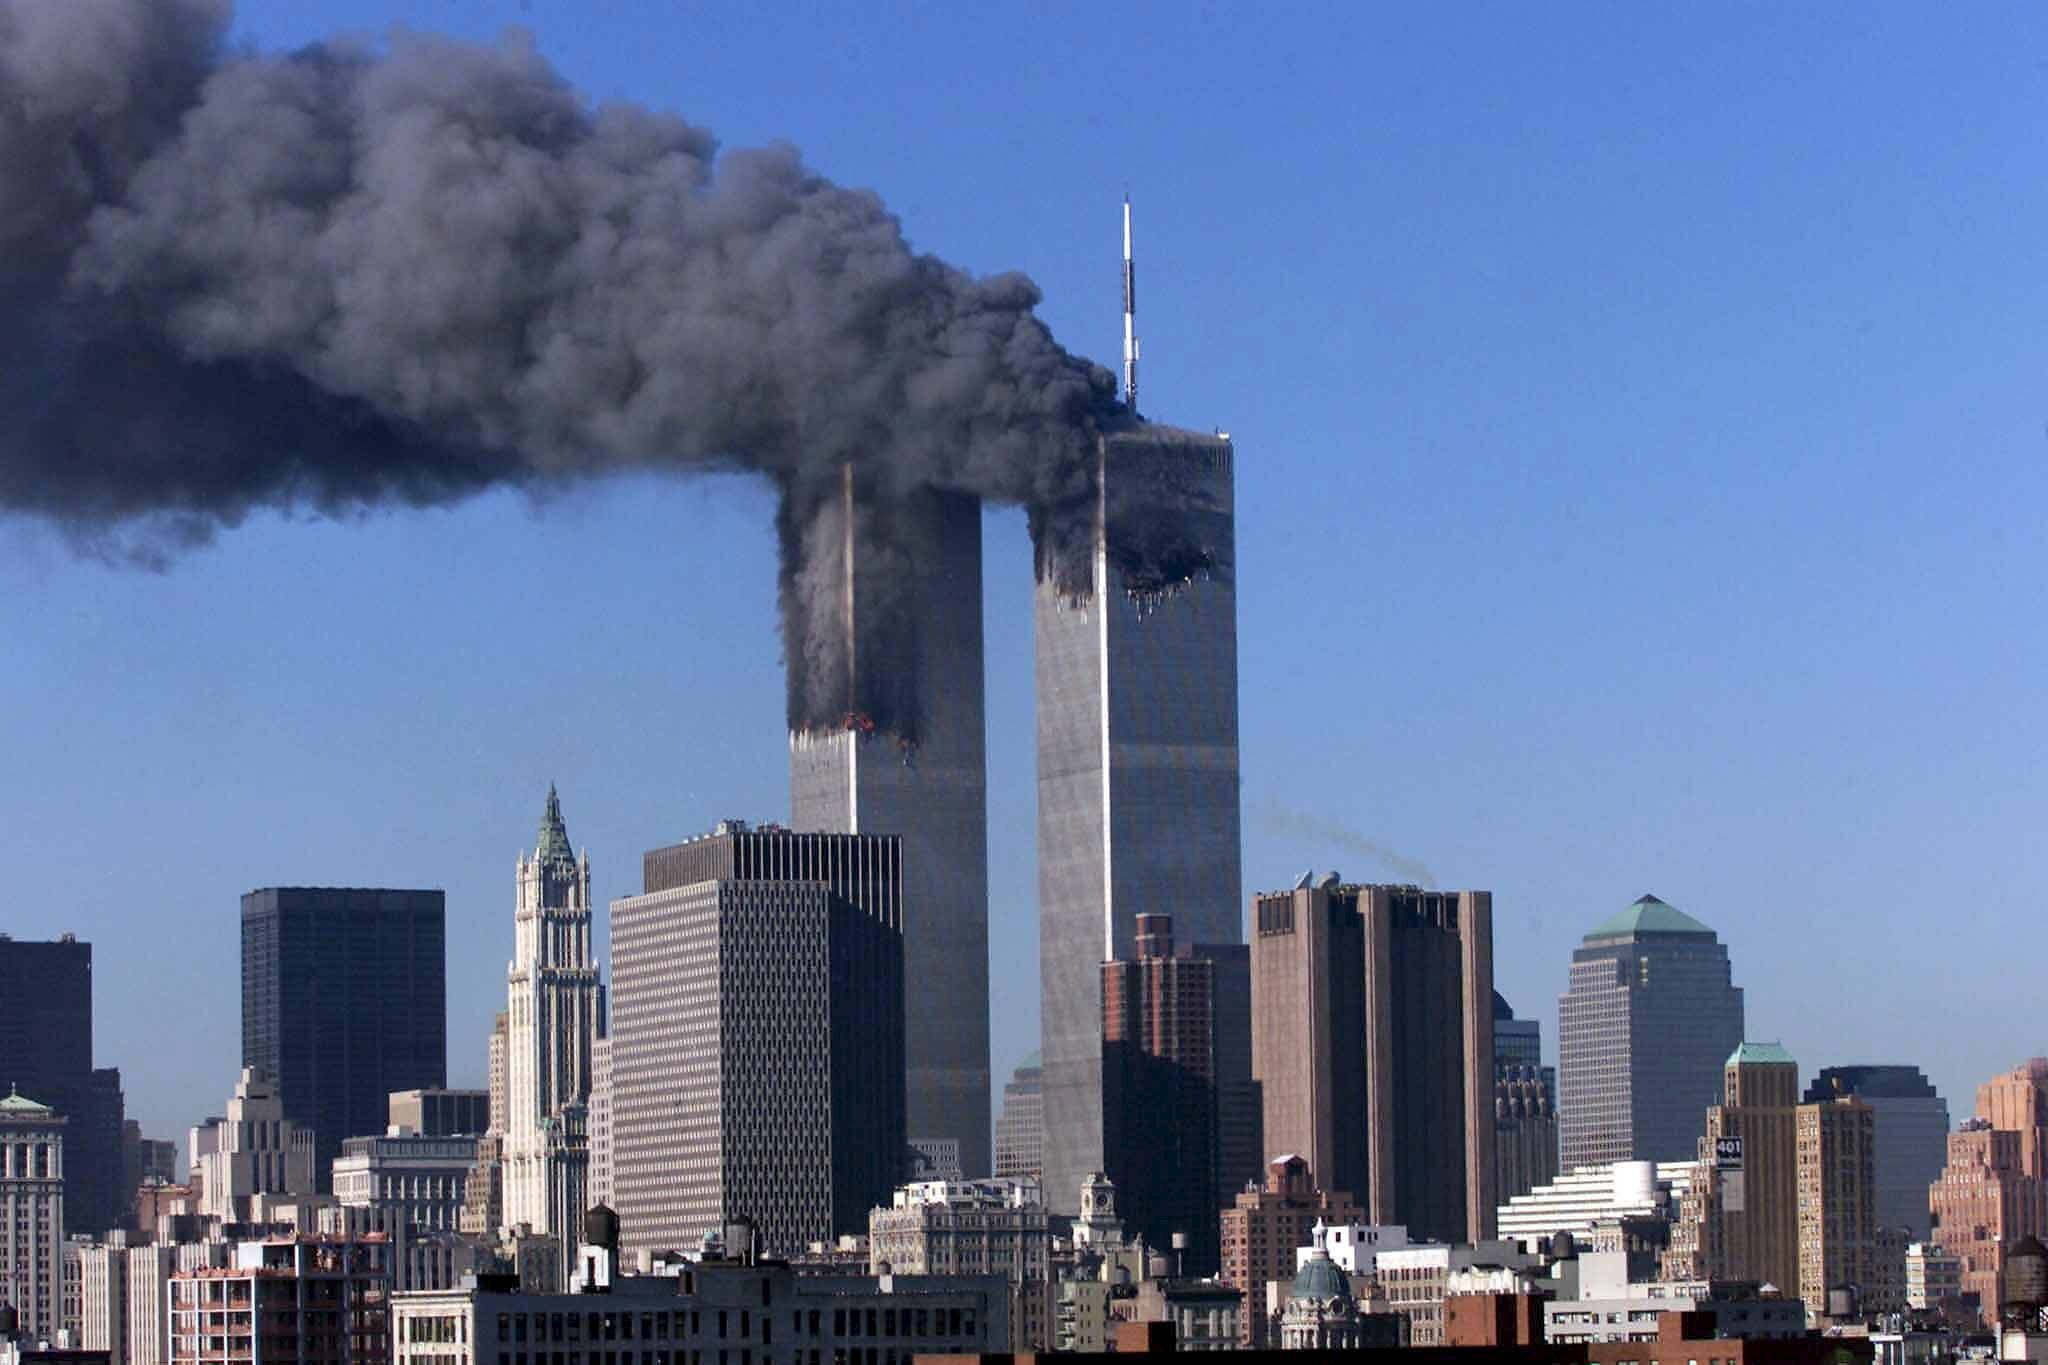 Imagen de archivo que muestra las Torres Gemelas en llamas despu&#233;s del atentado del 11 de saptiembre de 2001 en Nueva York, EE.UU. EFE/JASON SZENES./Archivo
